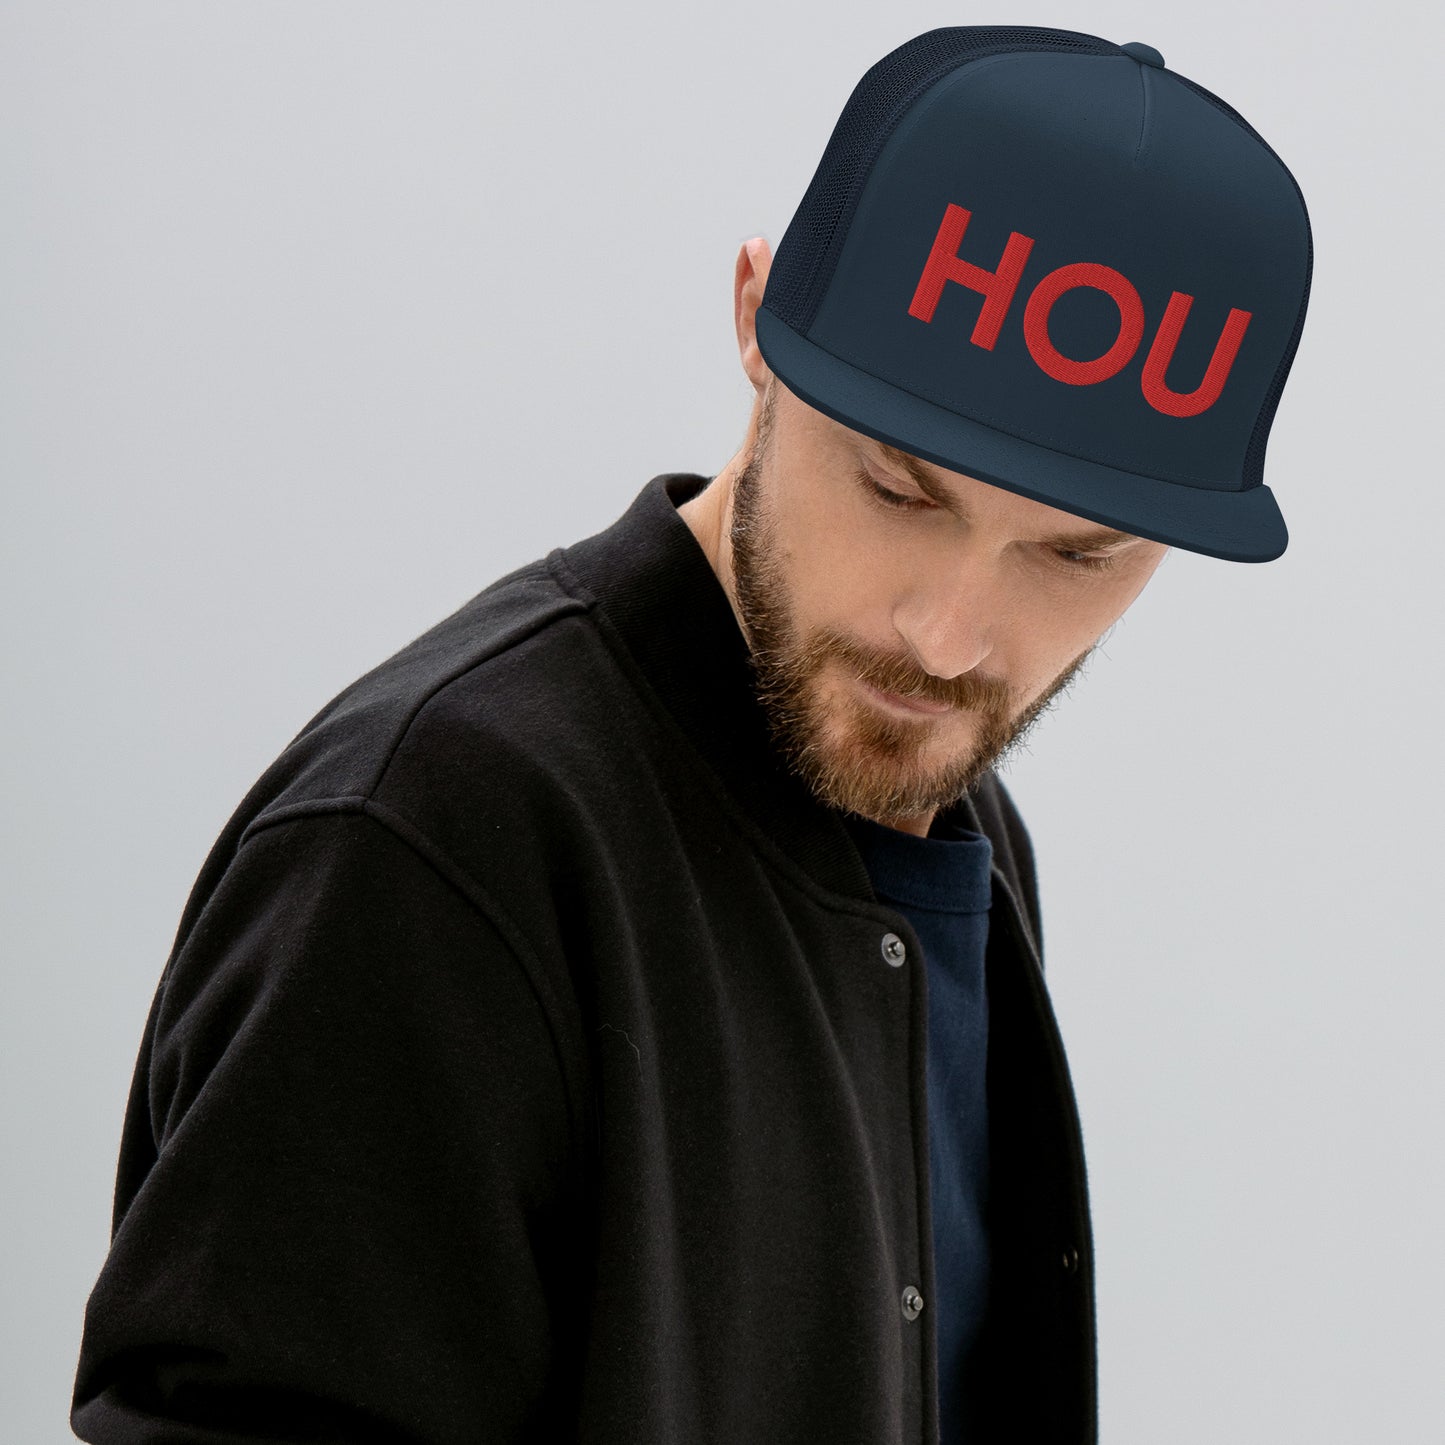 HOU Houston Nation Trucker Hat